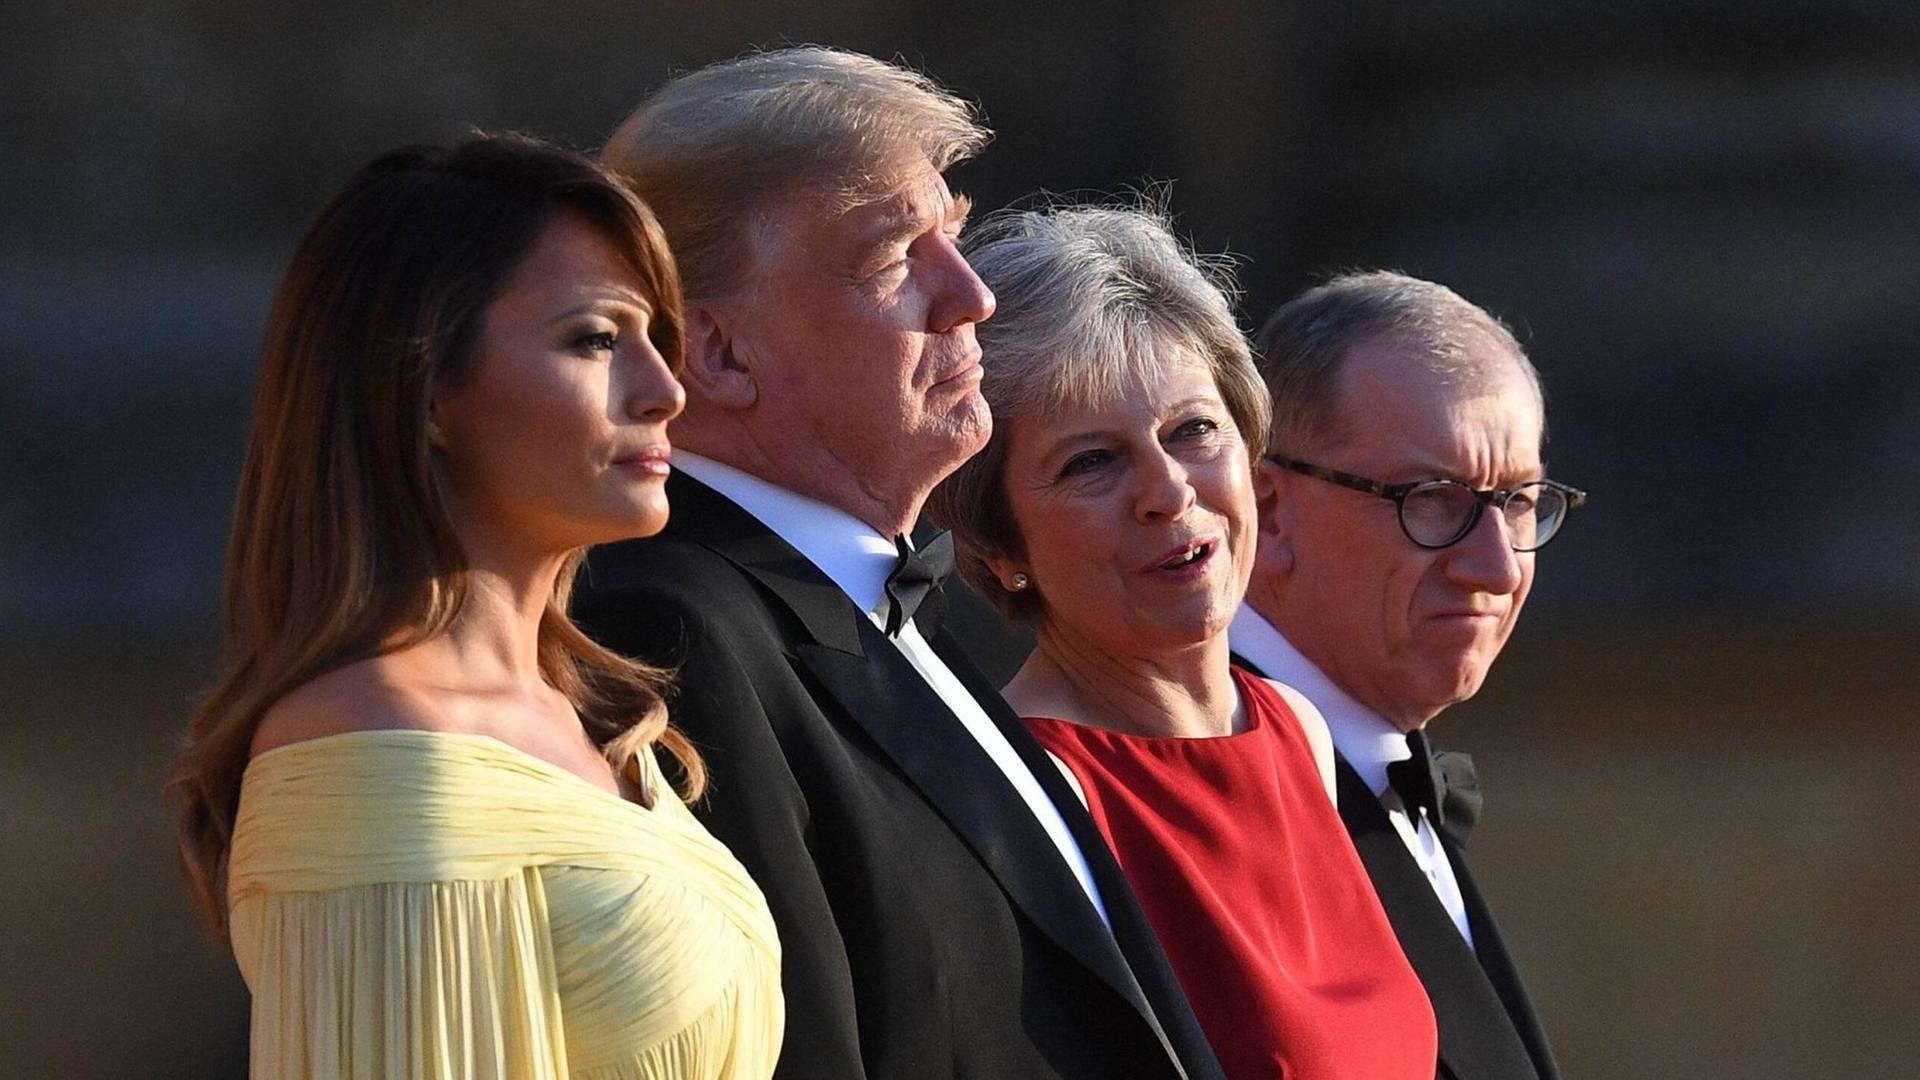 Aufstellung vor dem Dinner: Melania und Donald Trump zu Gast bei Premierministerin May und ihrem Gatten.